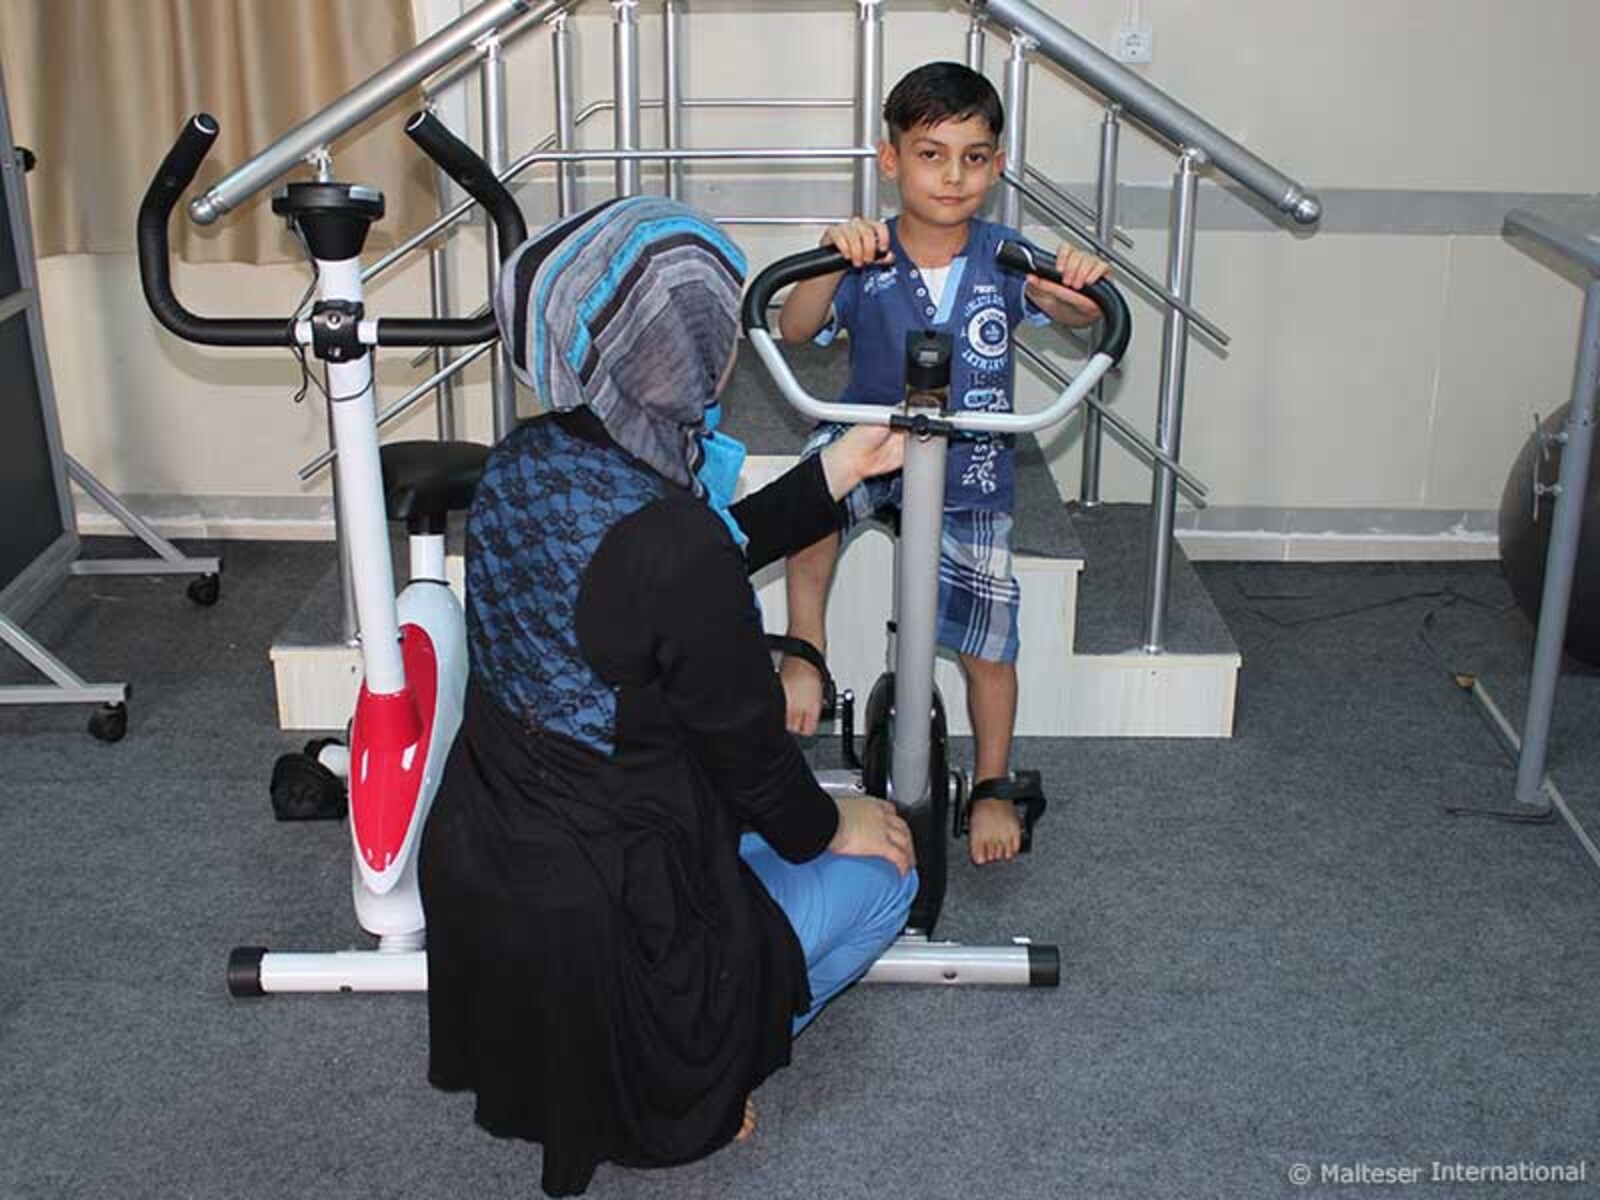 Die Physiotherapie war erfolgreich. Zu Beginn konnte Habib nicht alleine gehen. Durch Übungen und ausdauerndes Training kann er sich nun wieder ohne fremde Hilfe fortbewegen